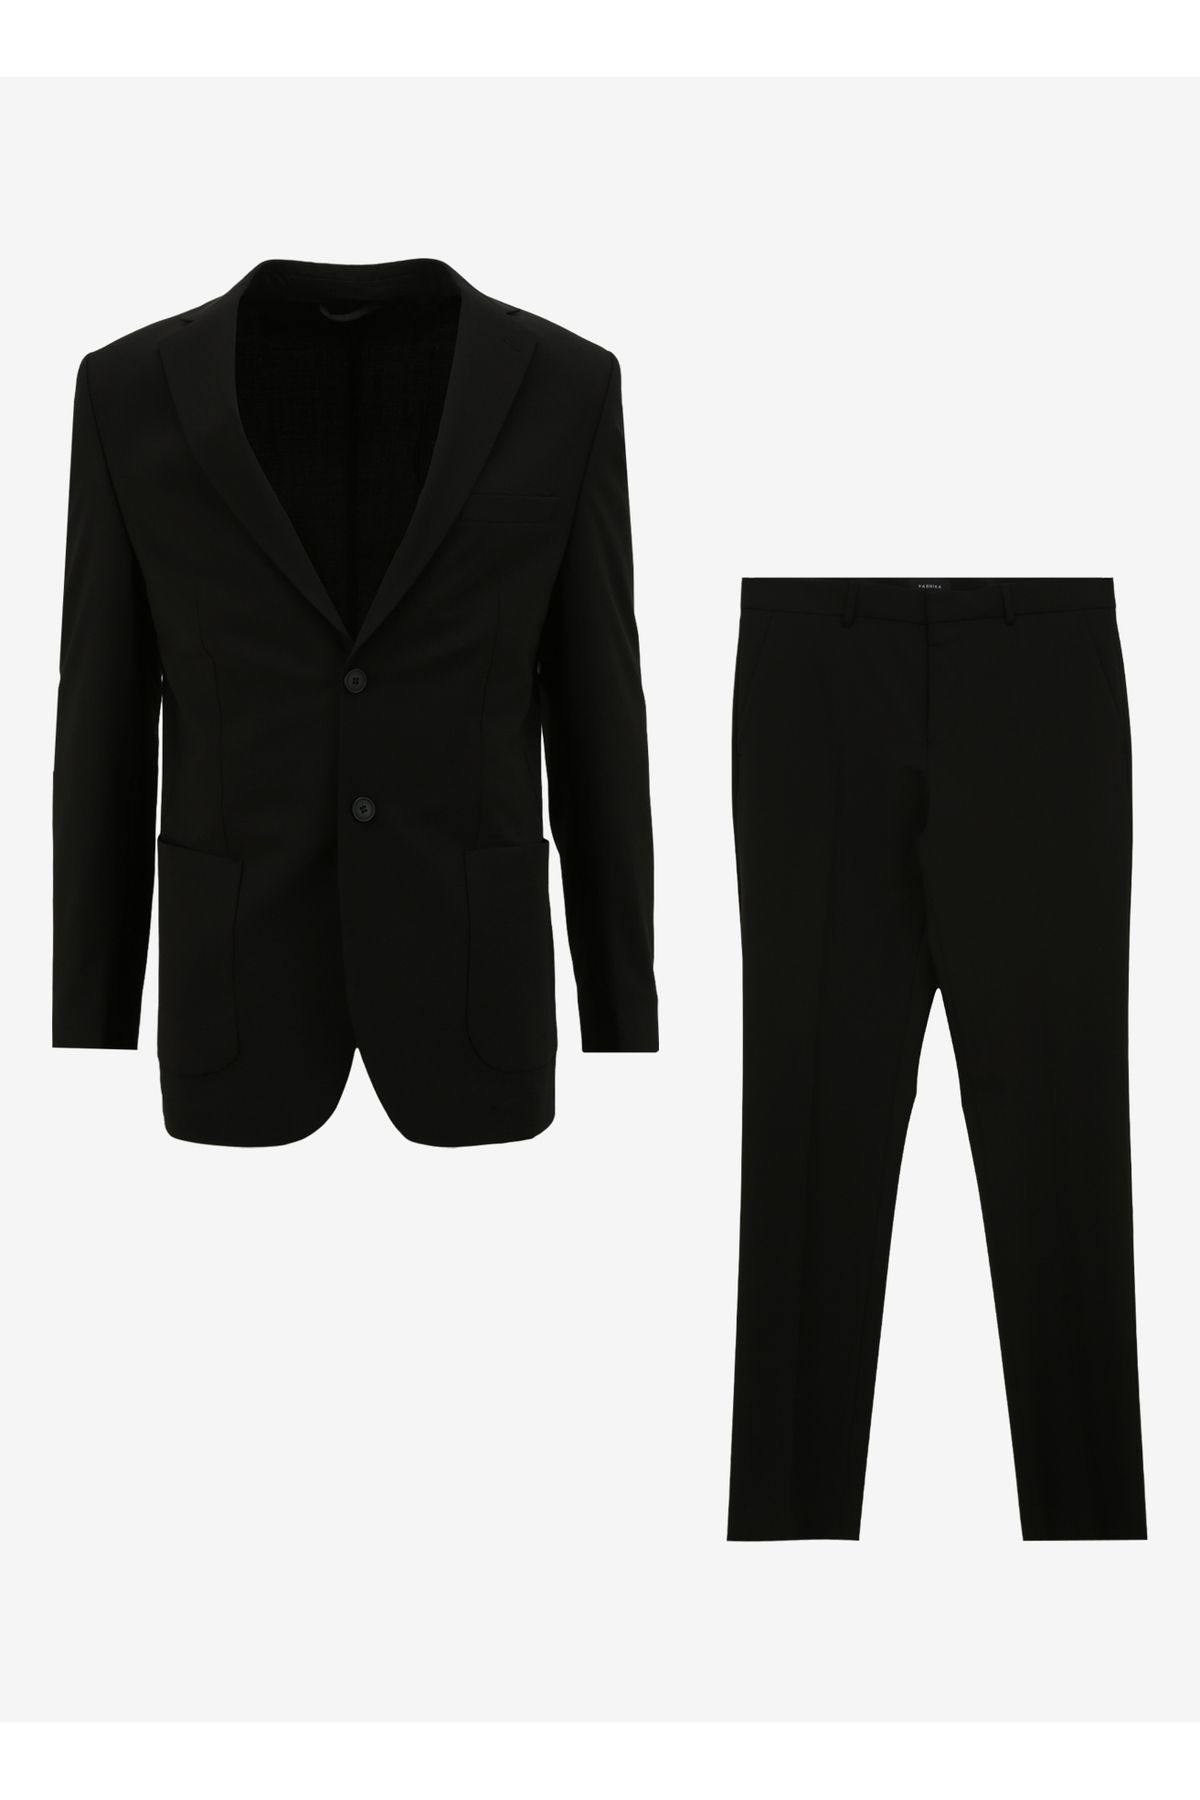 Fabrika Normal Bel Basic Siyah Erkek Takım Elbise F4SM-TKM 0363